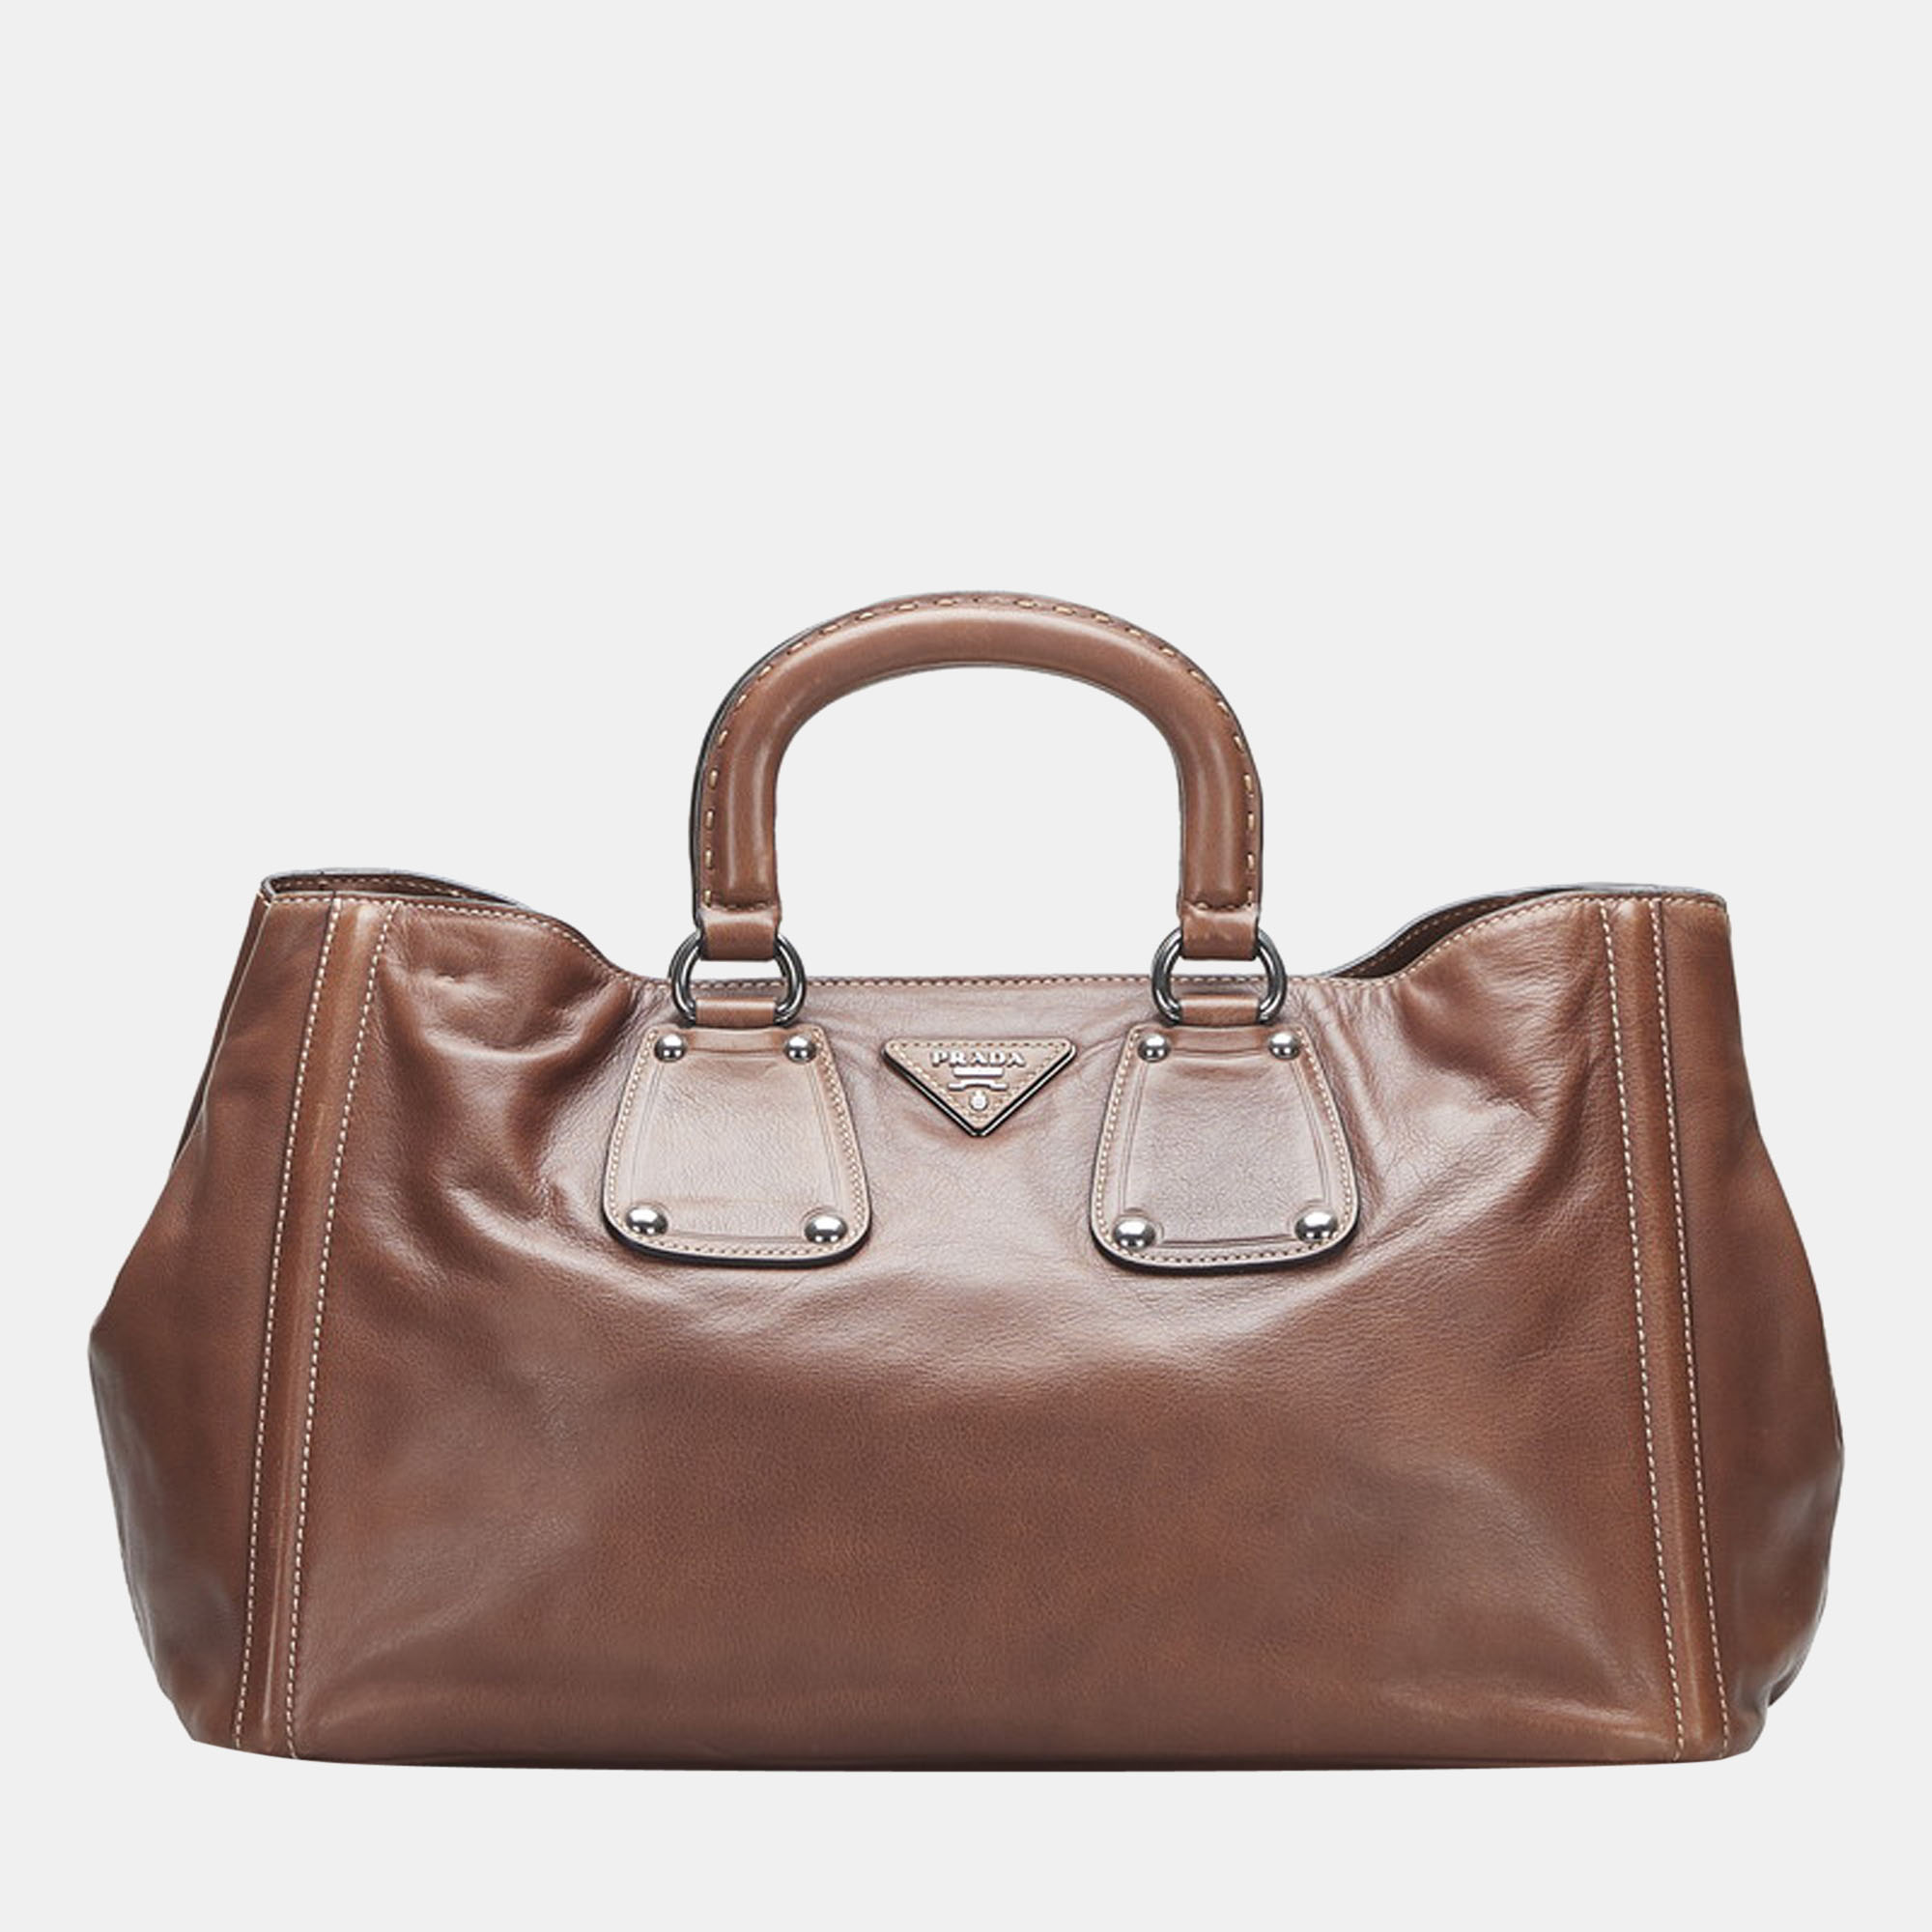 Pre-owned Prada Brown Leather Nocciolo Handbag